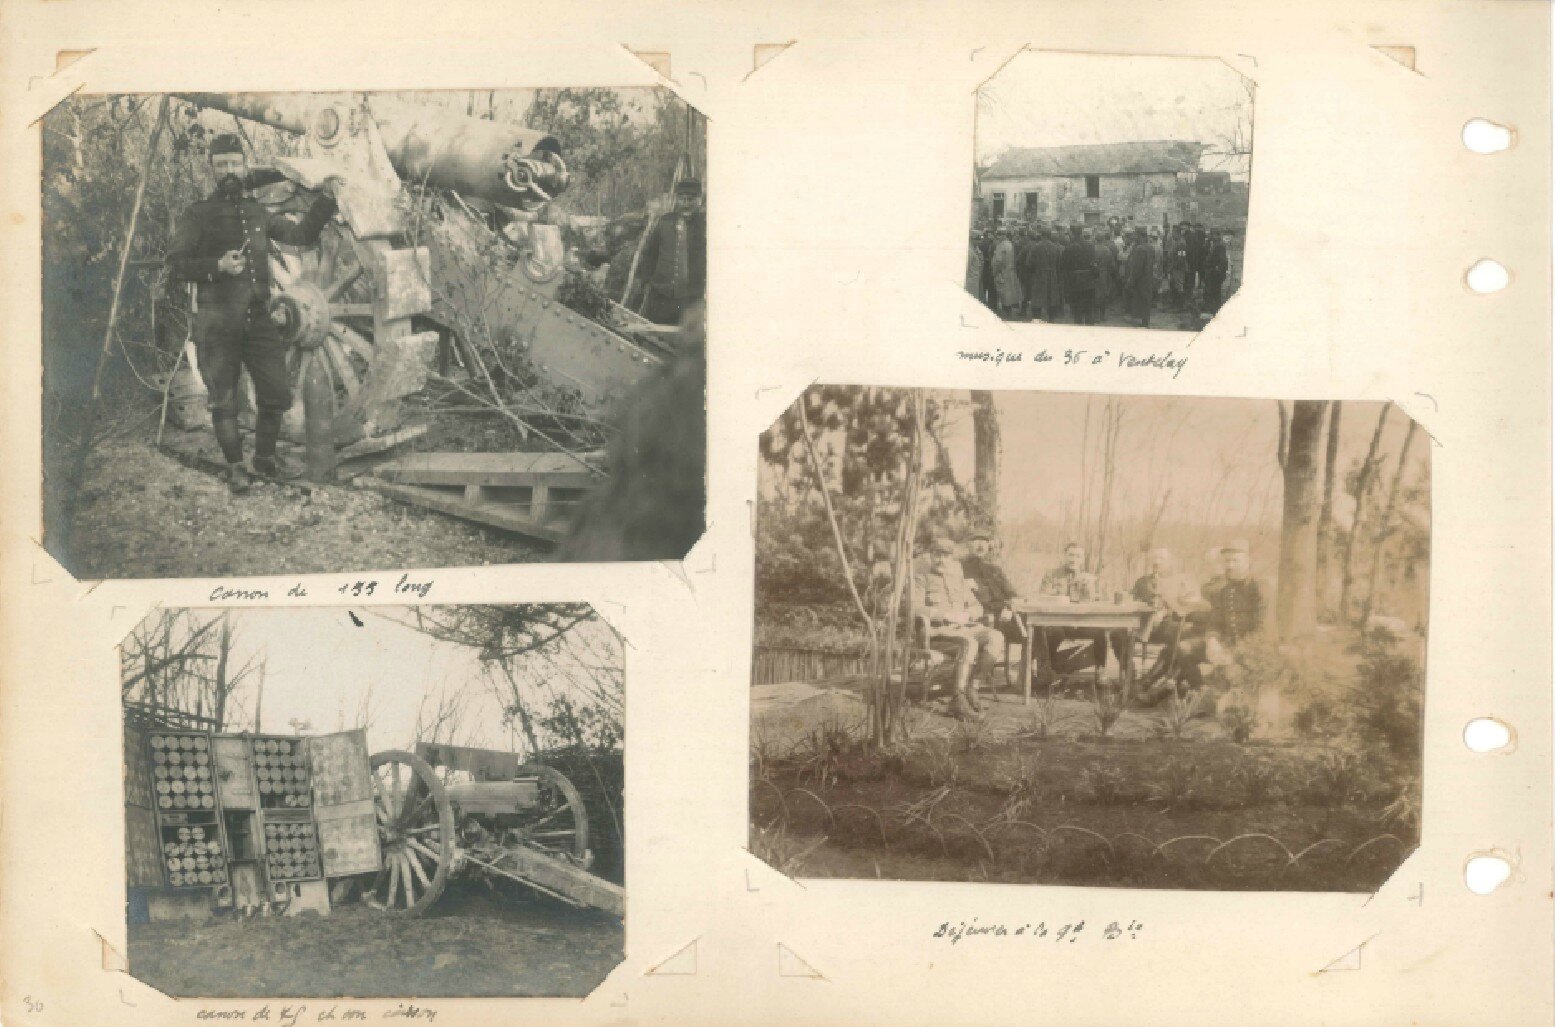 p.030 - Front de l’Aisne (13 septembre 1914 – 22 mai 1915)